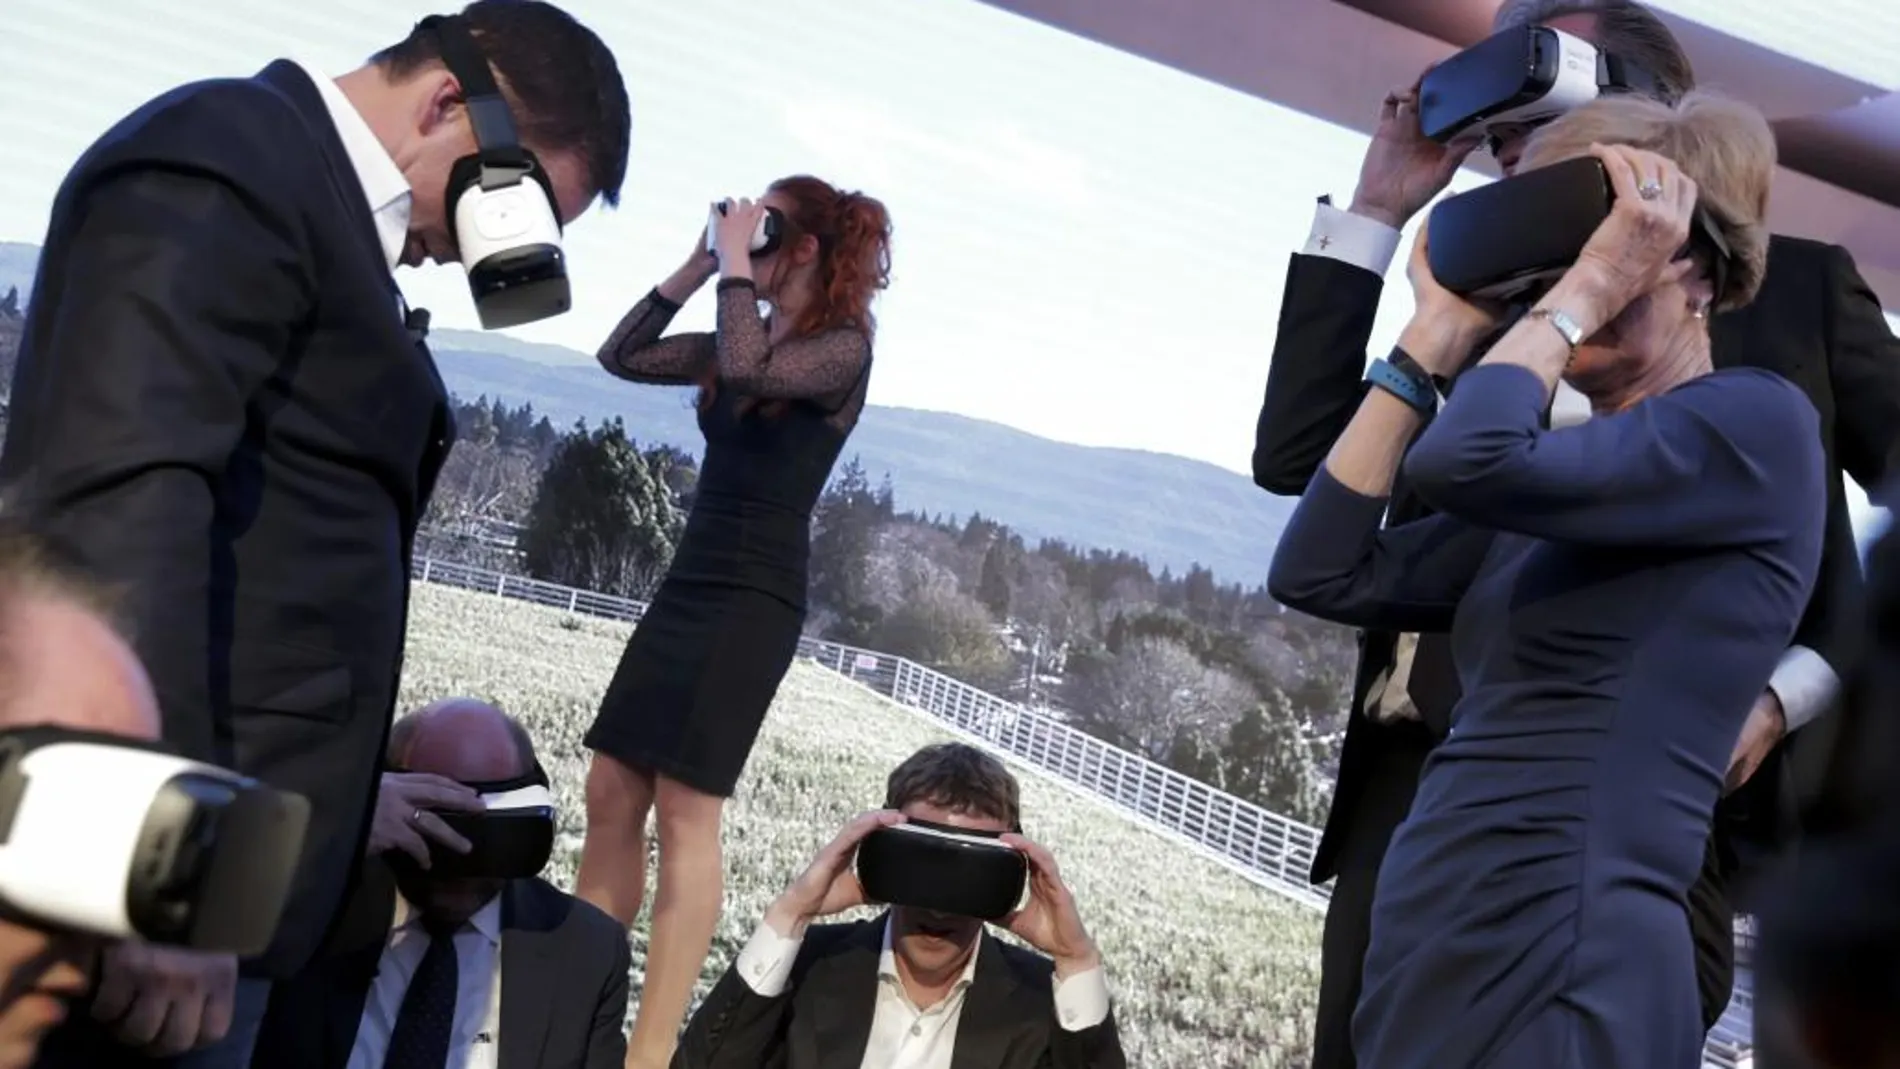 La realidad virtual, uno de los ejemplos de tecnología emergente que más cambiará nuestras vidas